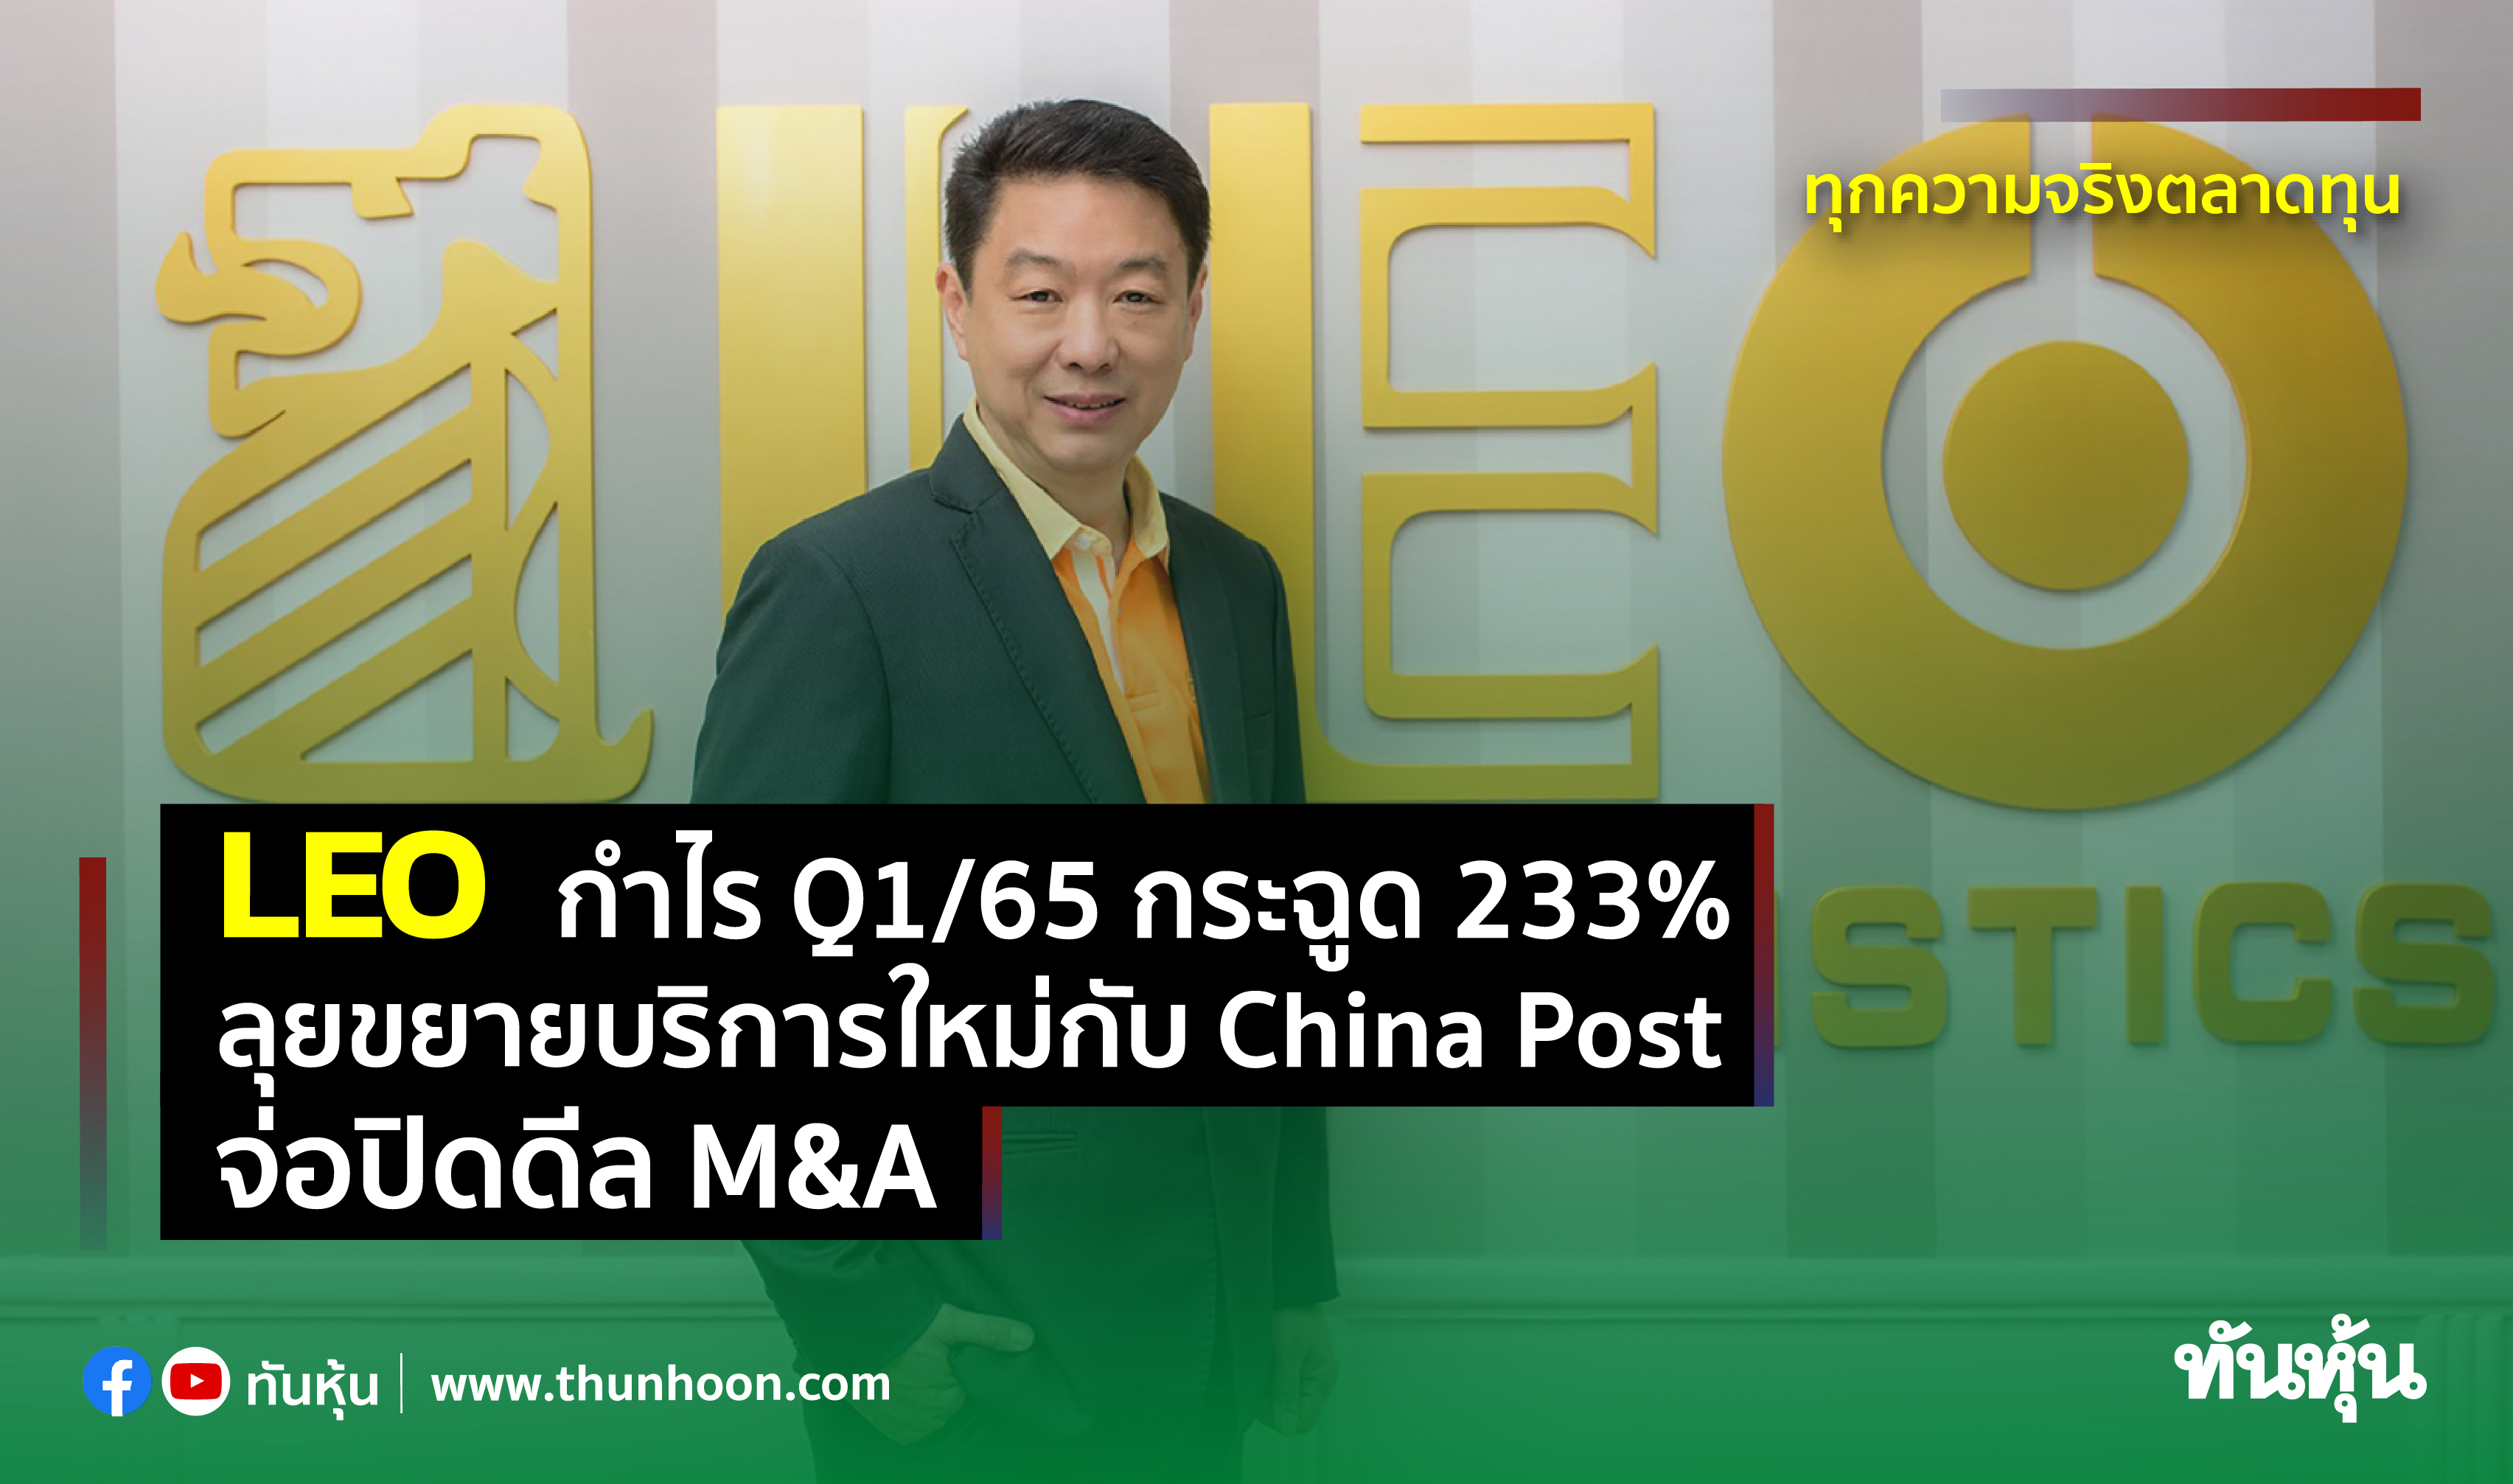 LEO กำไร Q1/65 กระฉูด 233% ลุยขยายบริการใหม่กับ China Post จ่อปิดดีล M&A